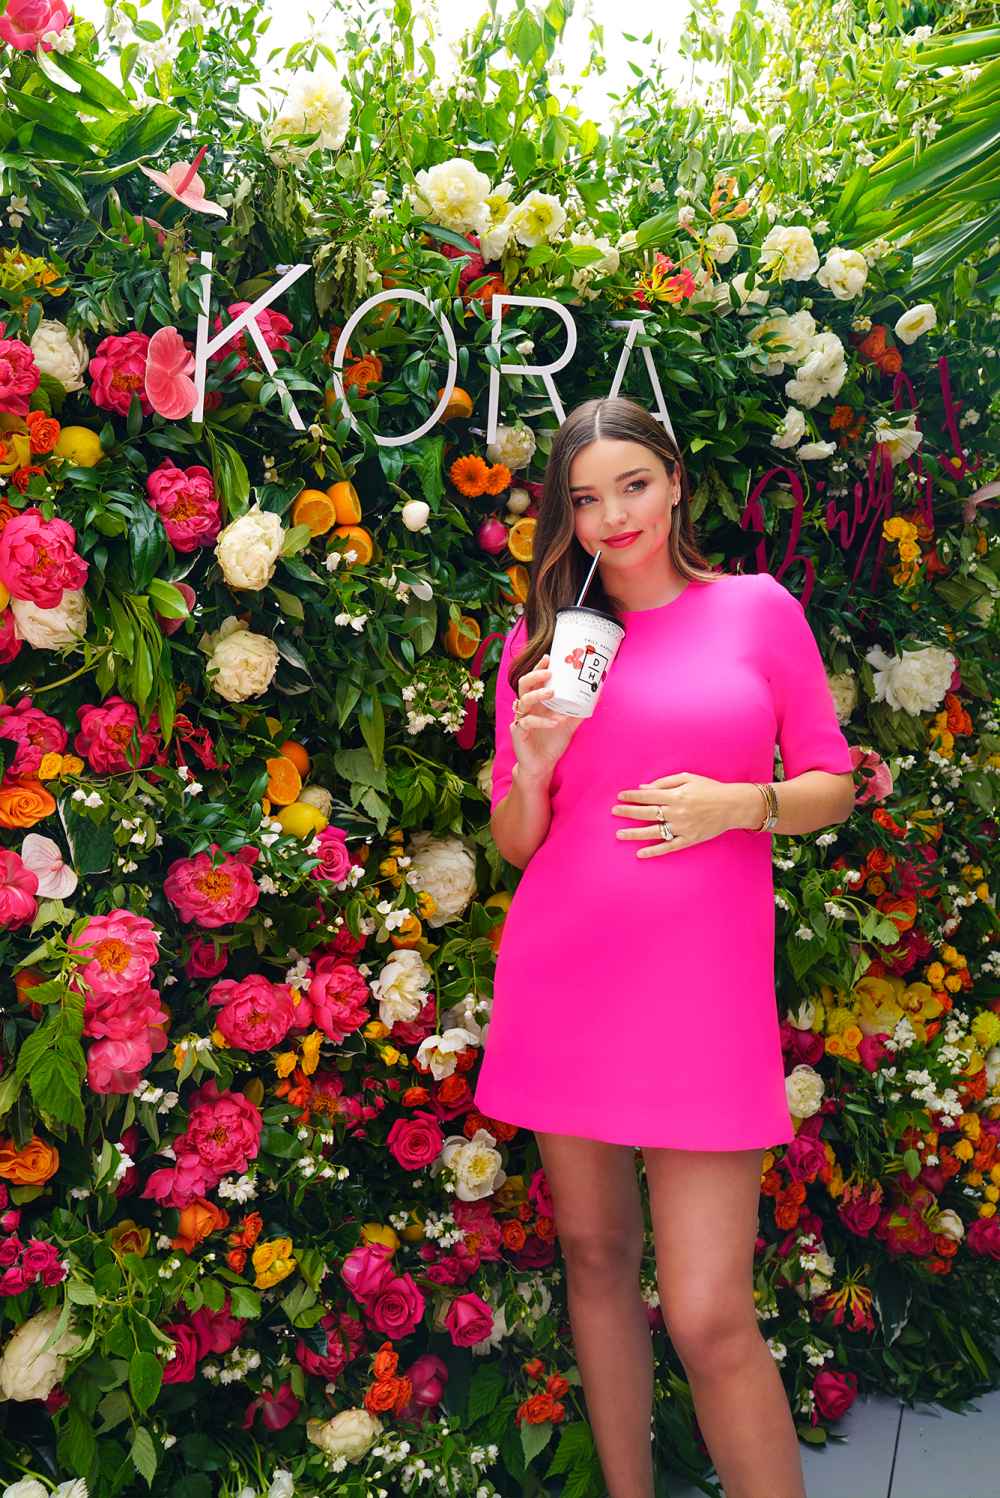 Miranda Kerr Shares Pregnancy Symptoms